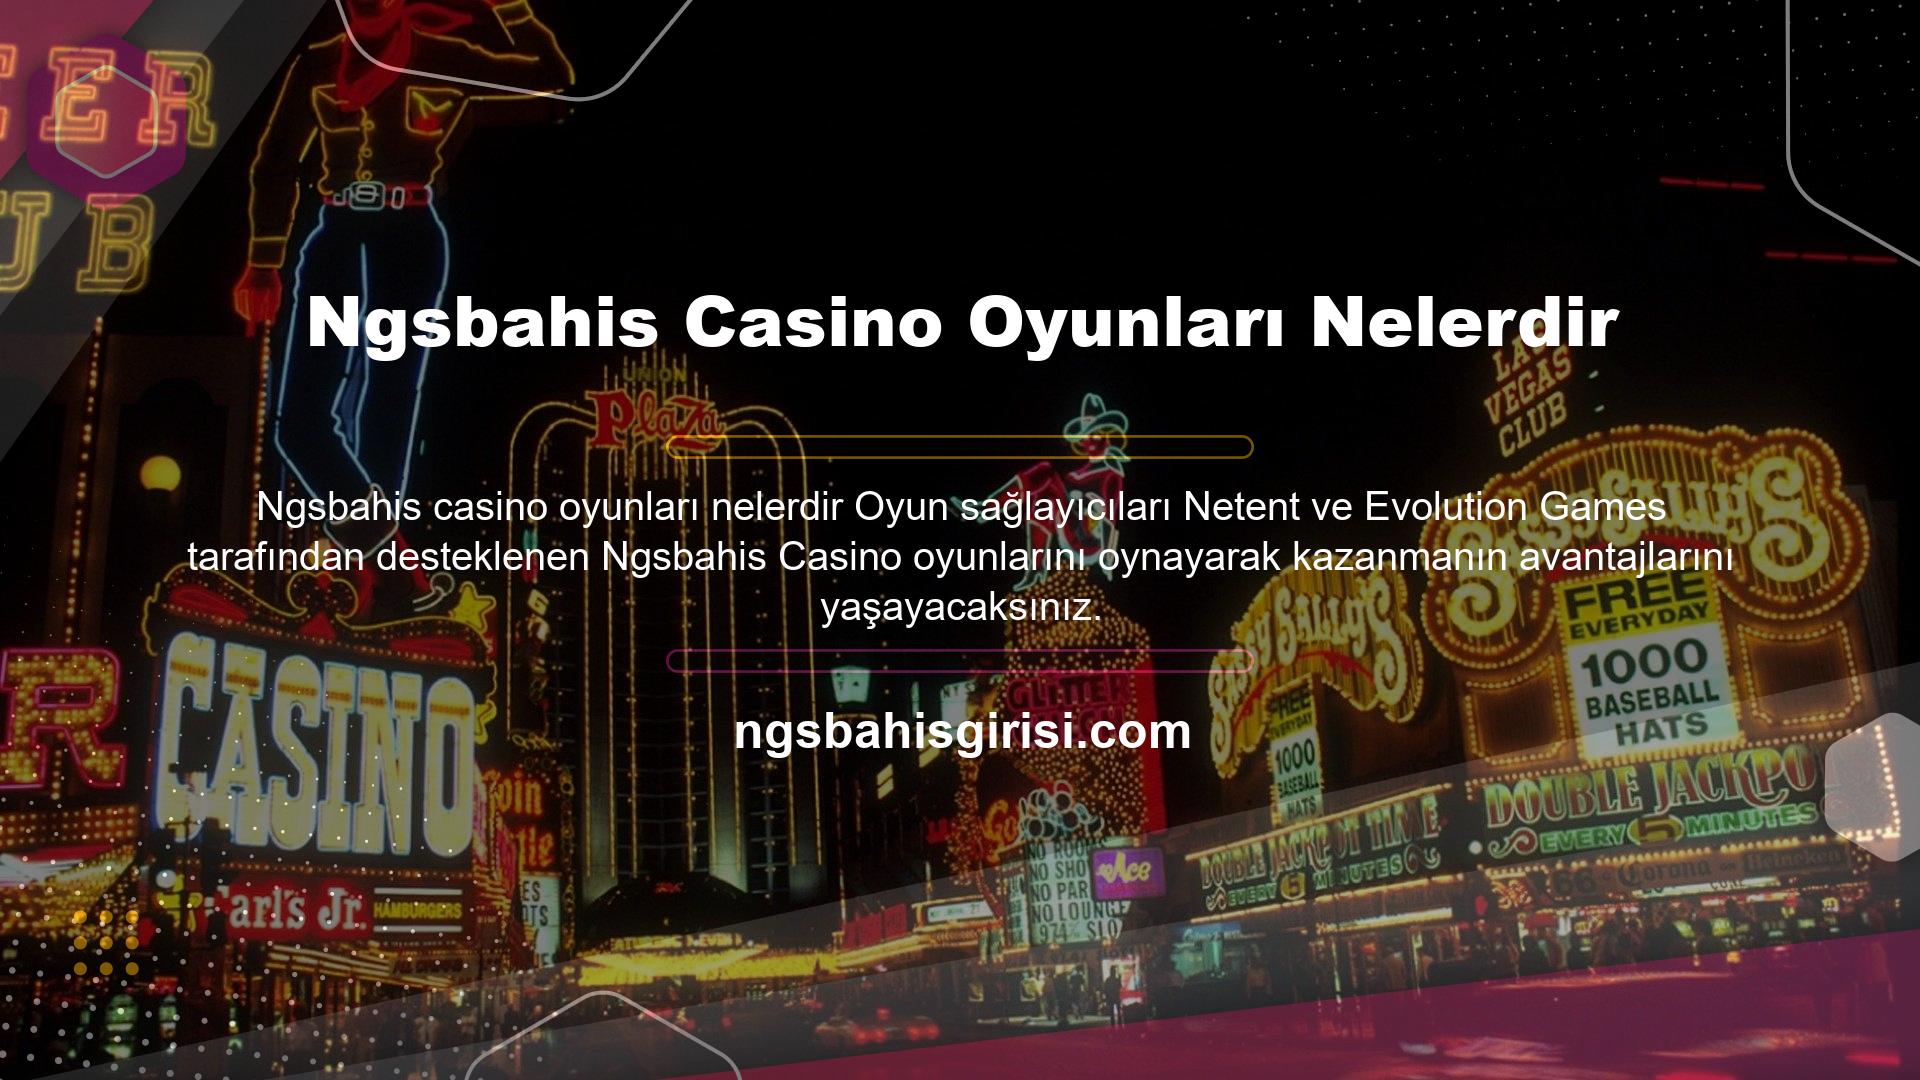 Spor bahisleri gibi ilgi çekici ve kaliteli etkinlikleri yayınlayan site, Türkçe dil desteği ile herkesin rahatlıkla casino oyunları oynamasını sağlıyor